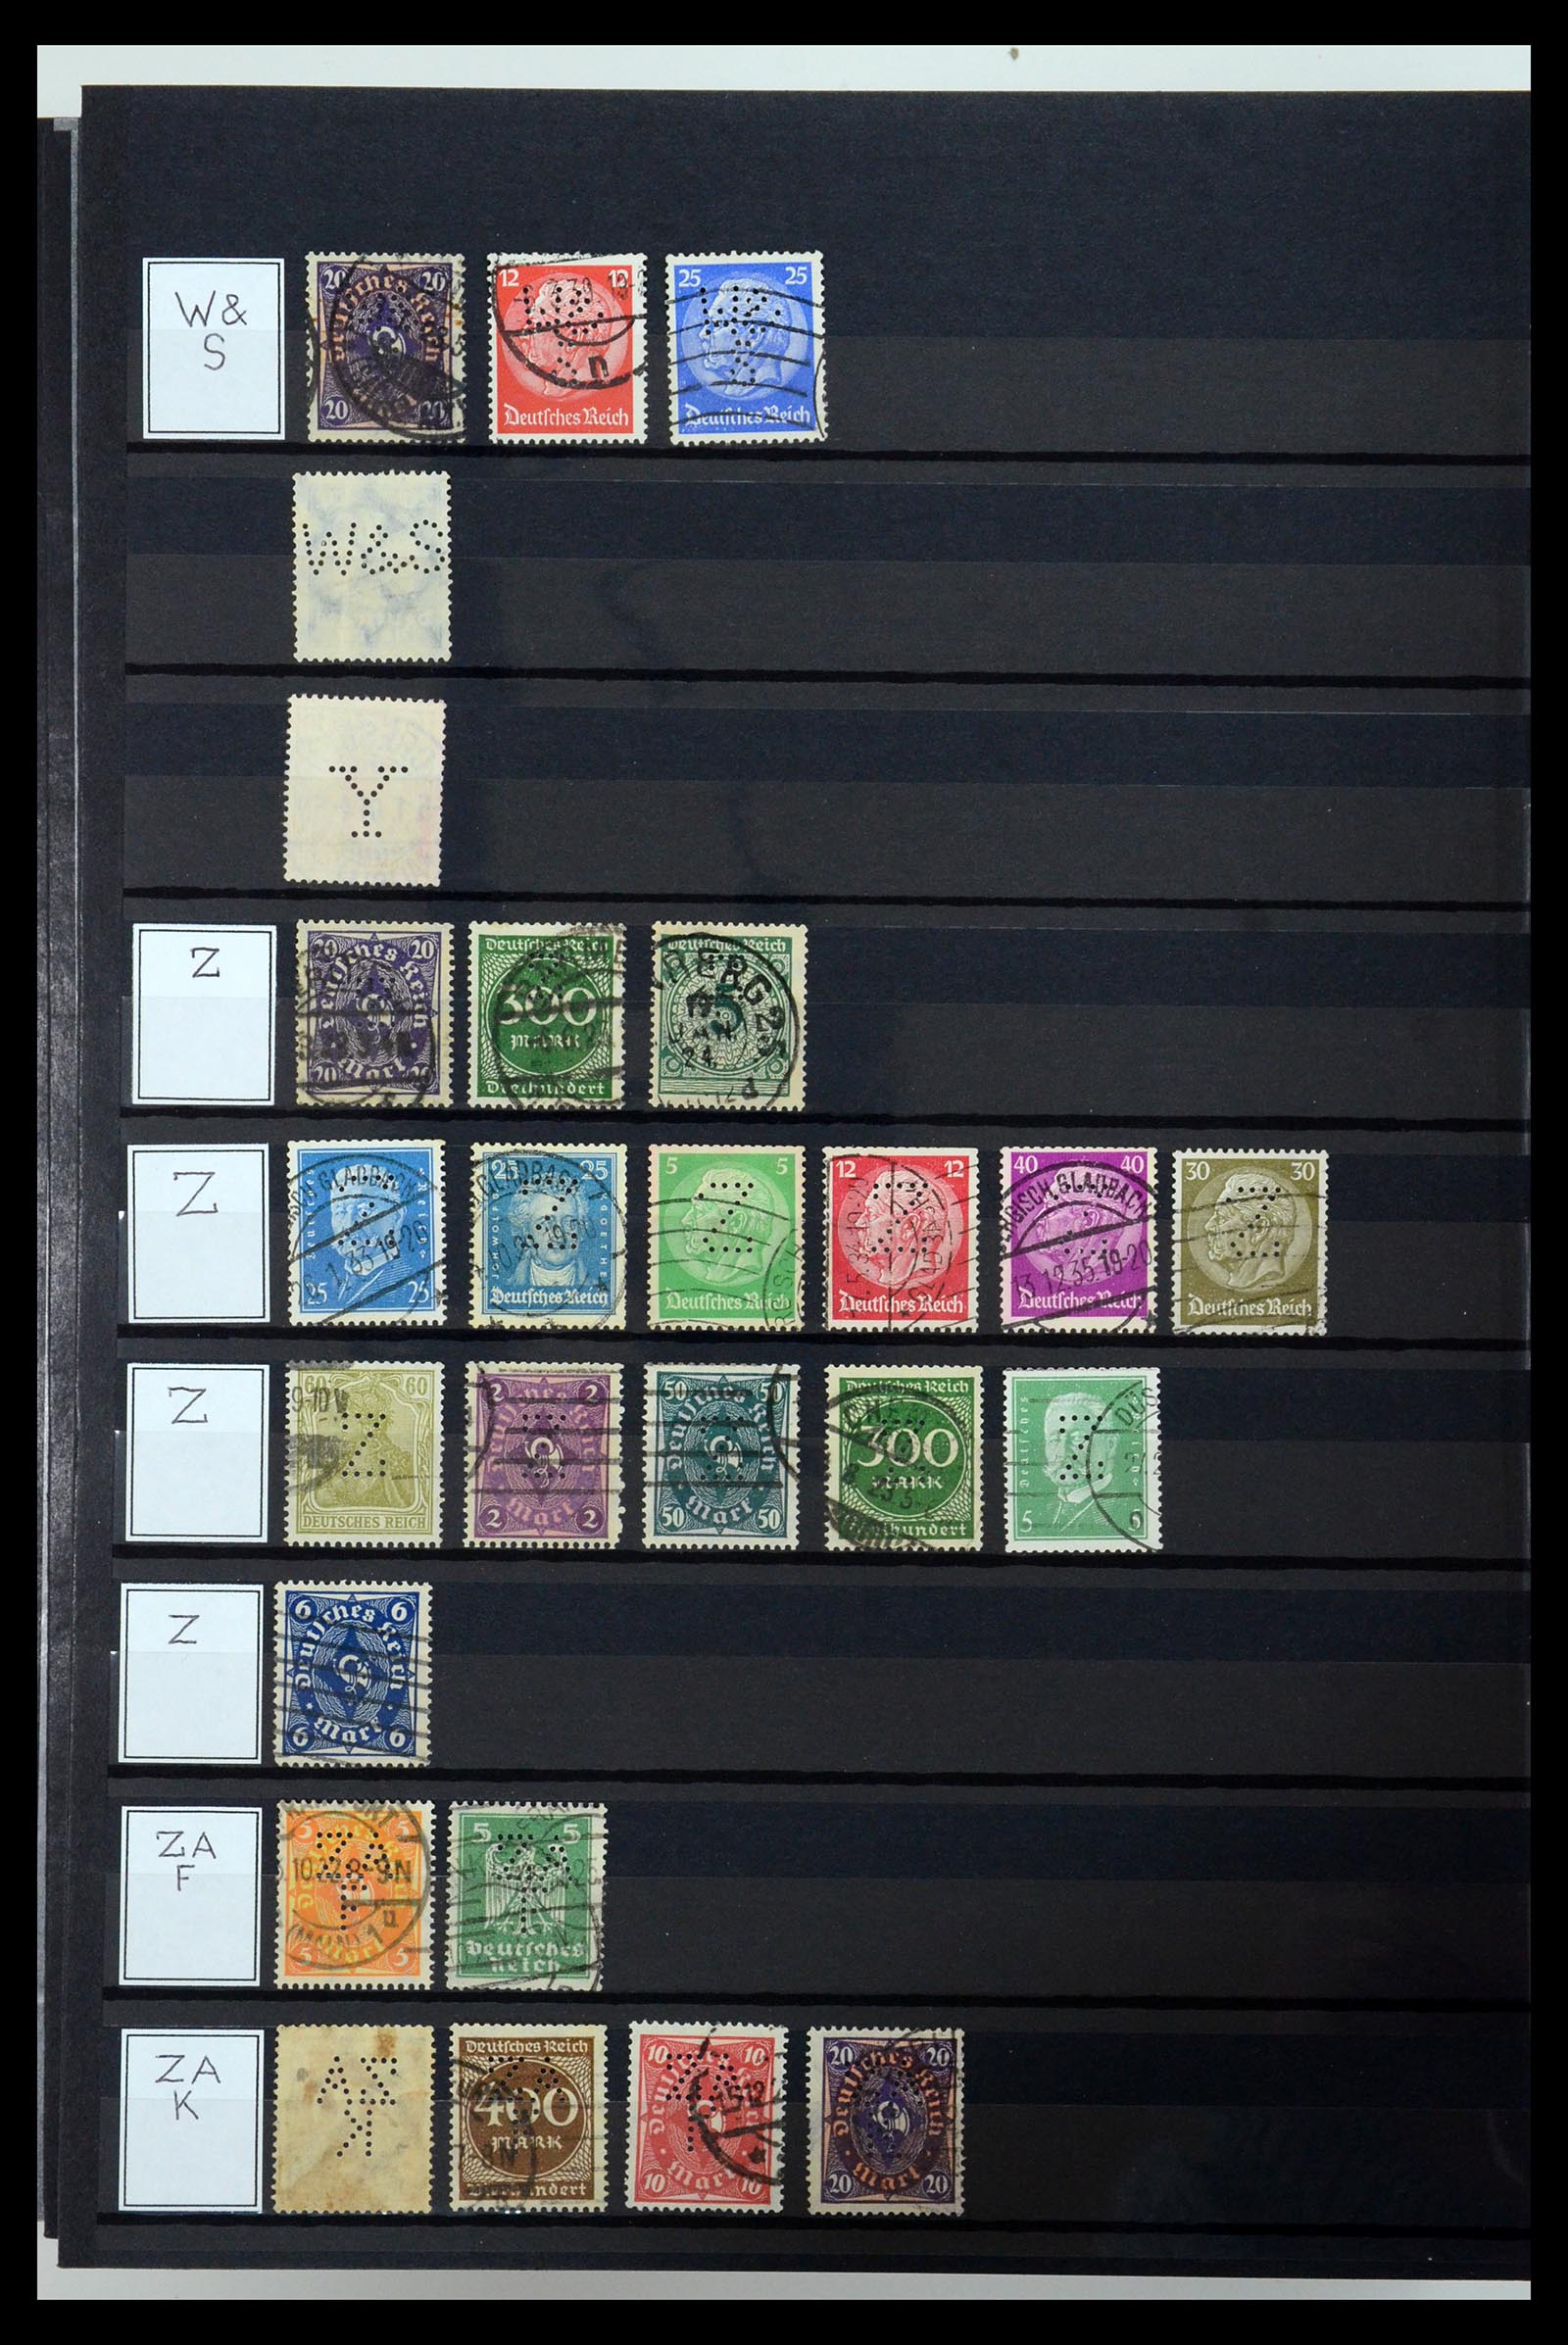 36405 347 - Stamp collection 36405 German Reich perfins 1880-1945.